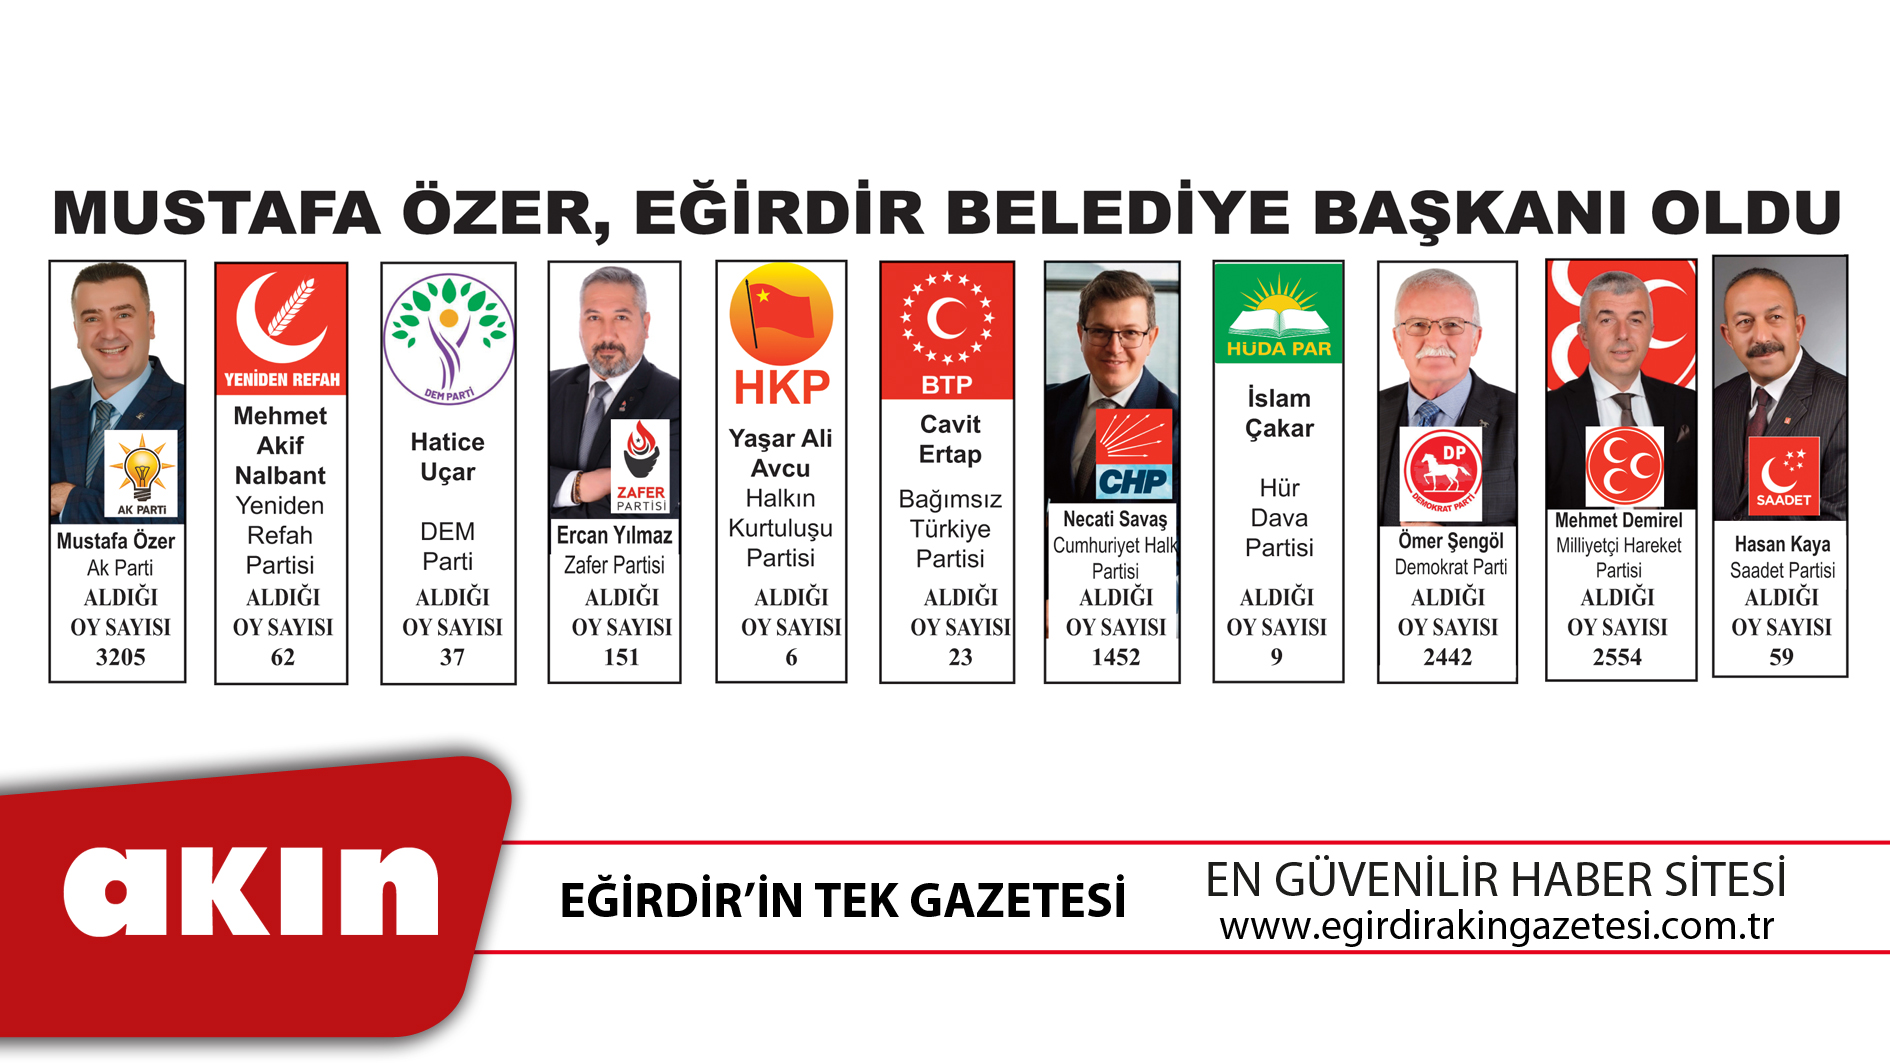 Mustafa Özer, Eğirdir Belediye Başkanı Oldu